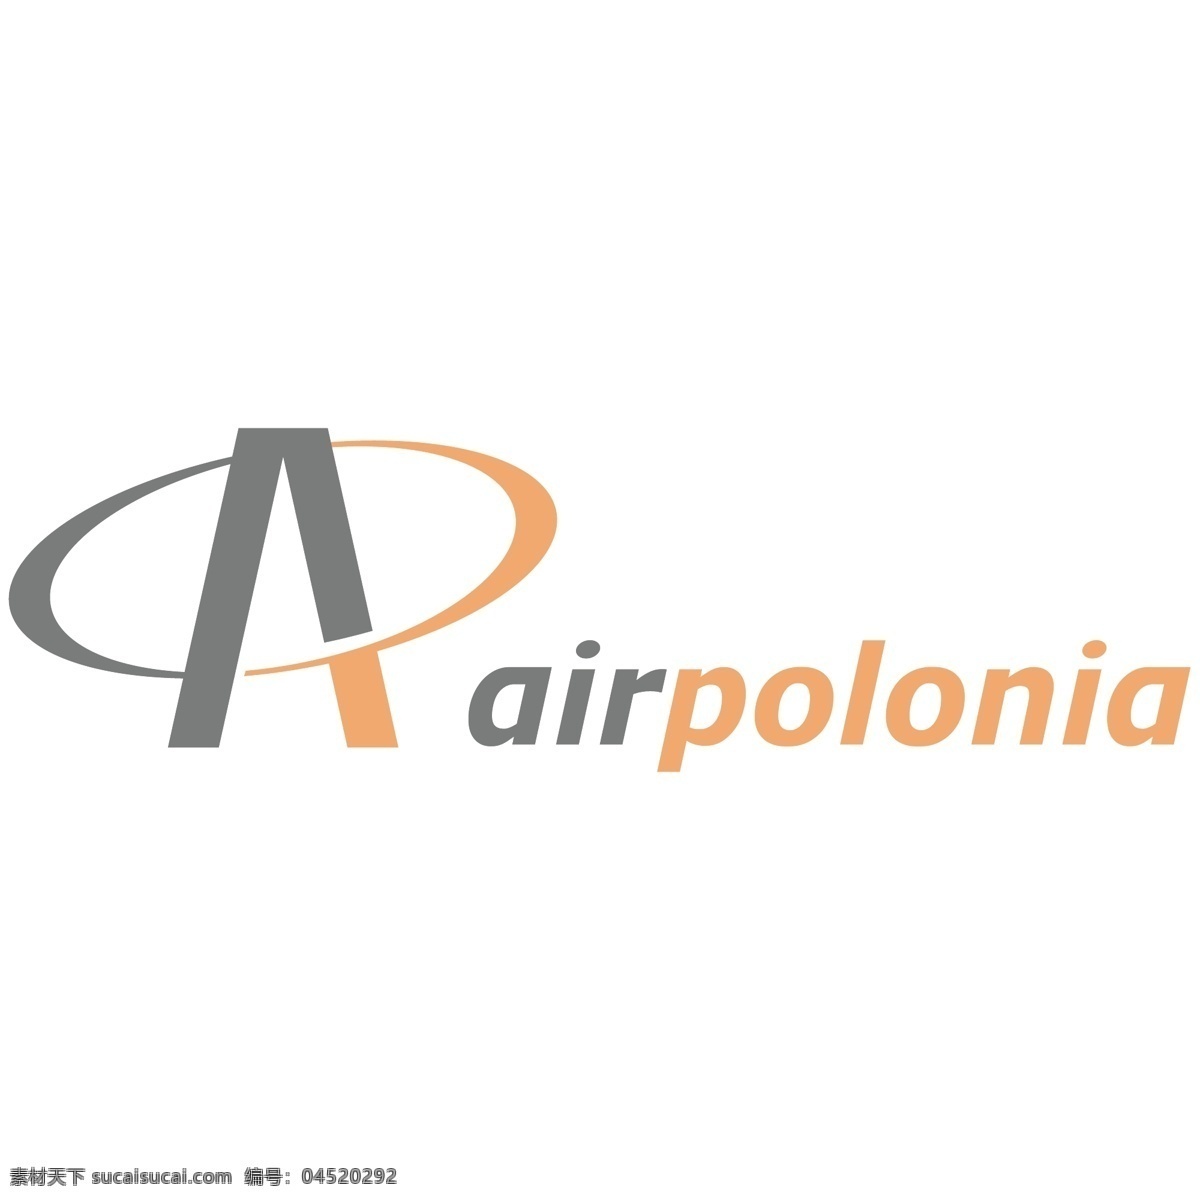 自由 空气 波洛 尼亚 标识 标志 白色